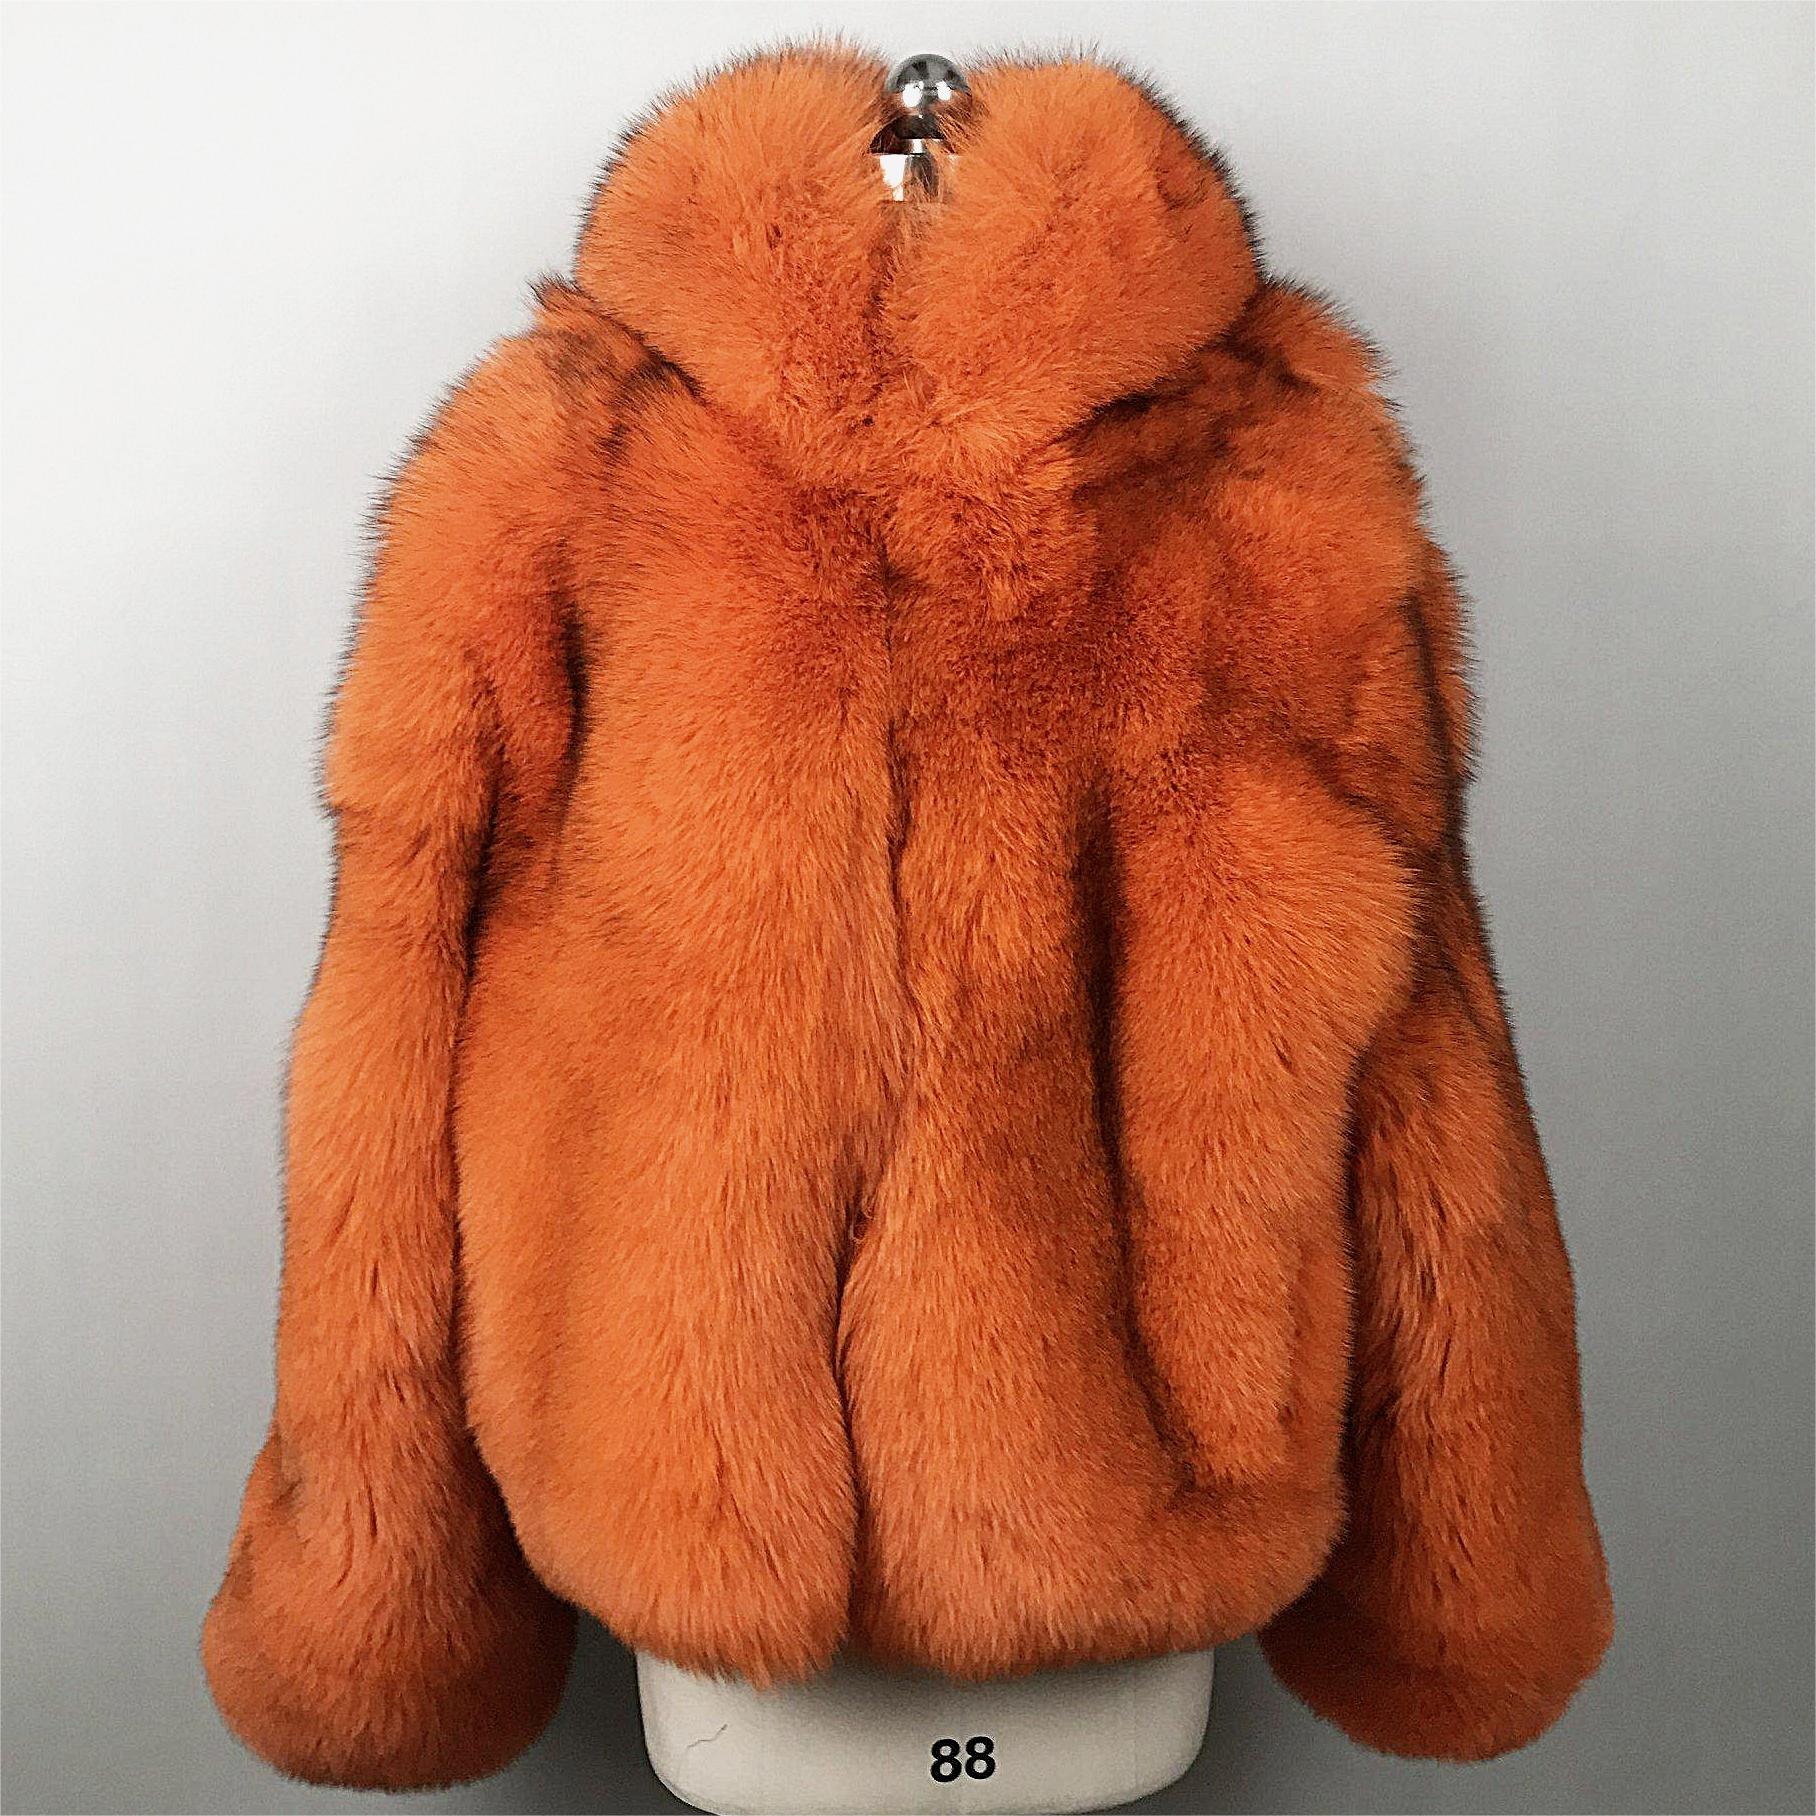 कस्टम नयाँ शीतकालीन प्लस आकार लामो वास्तविक पुरुष फर कोट रियल फक्स फर जैकेट महिला फर कोट